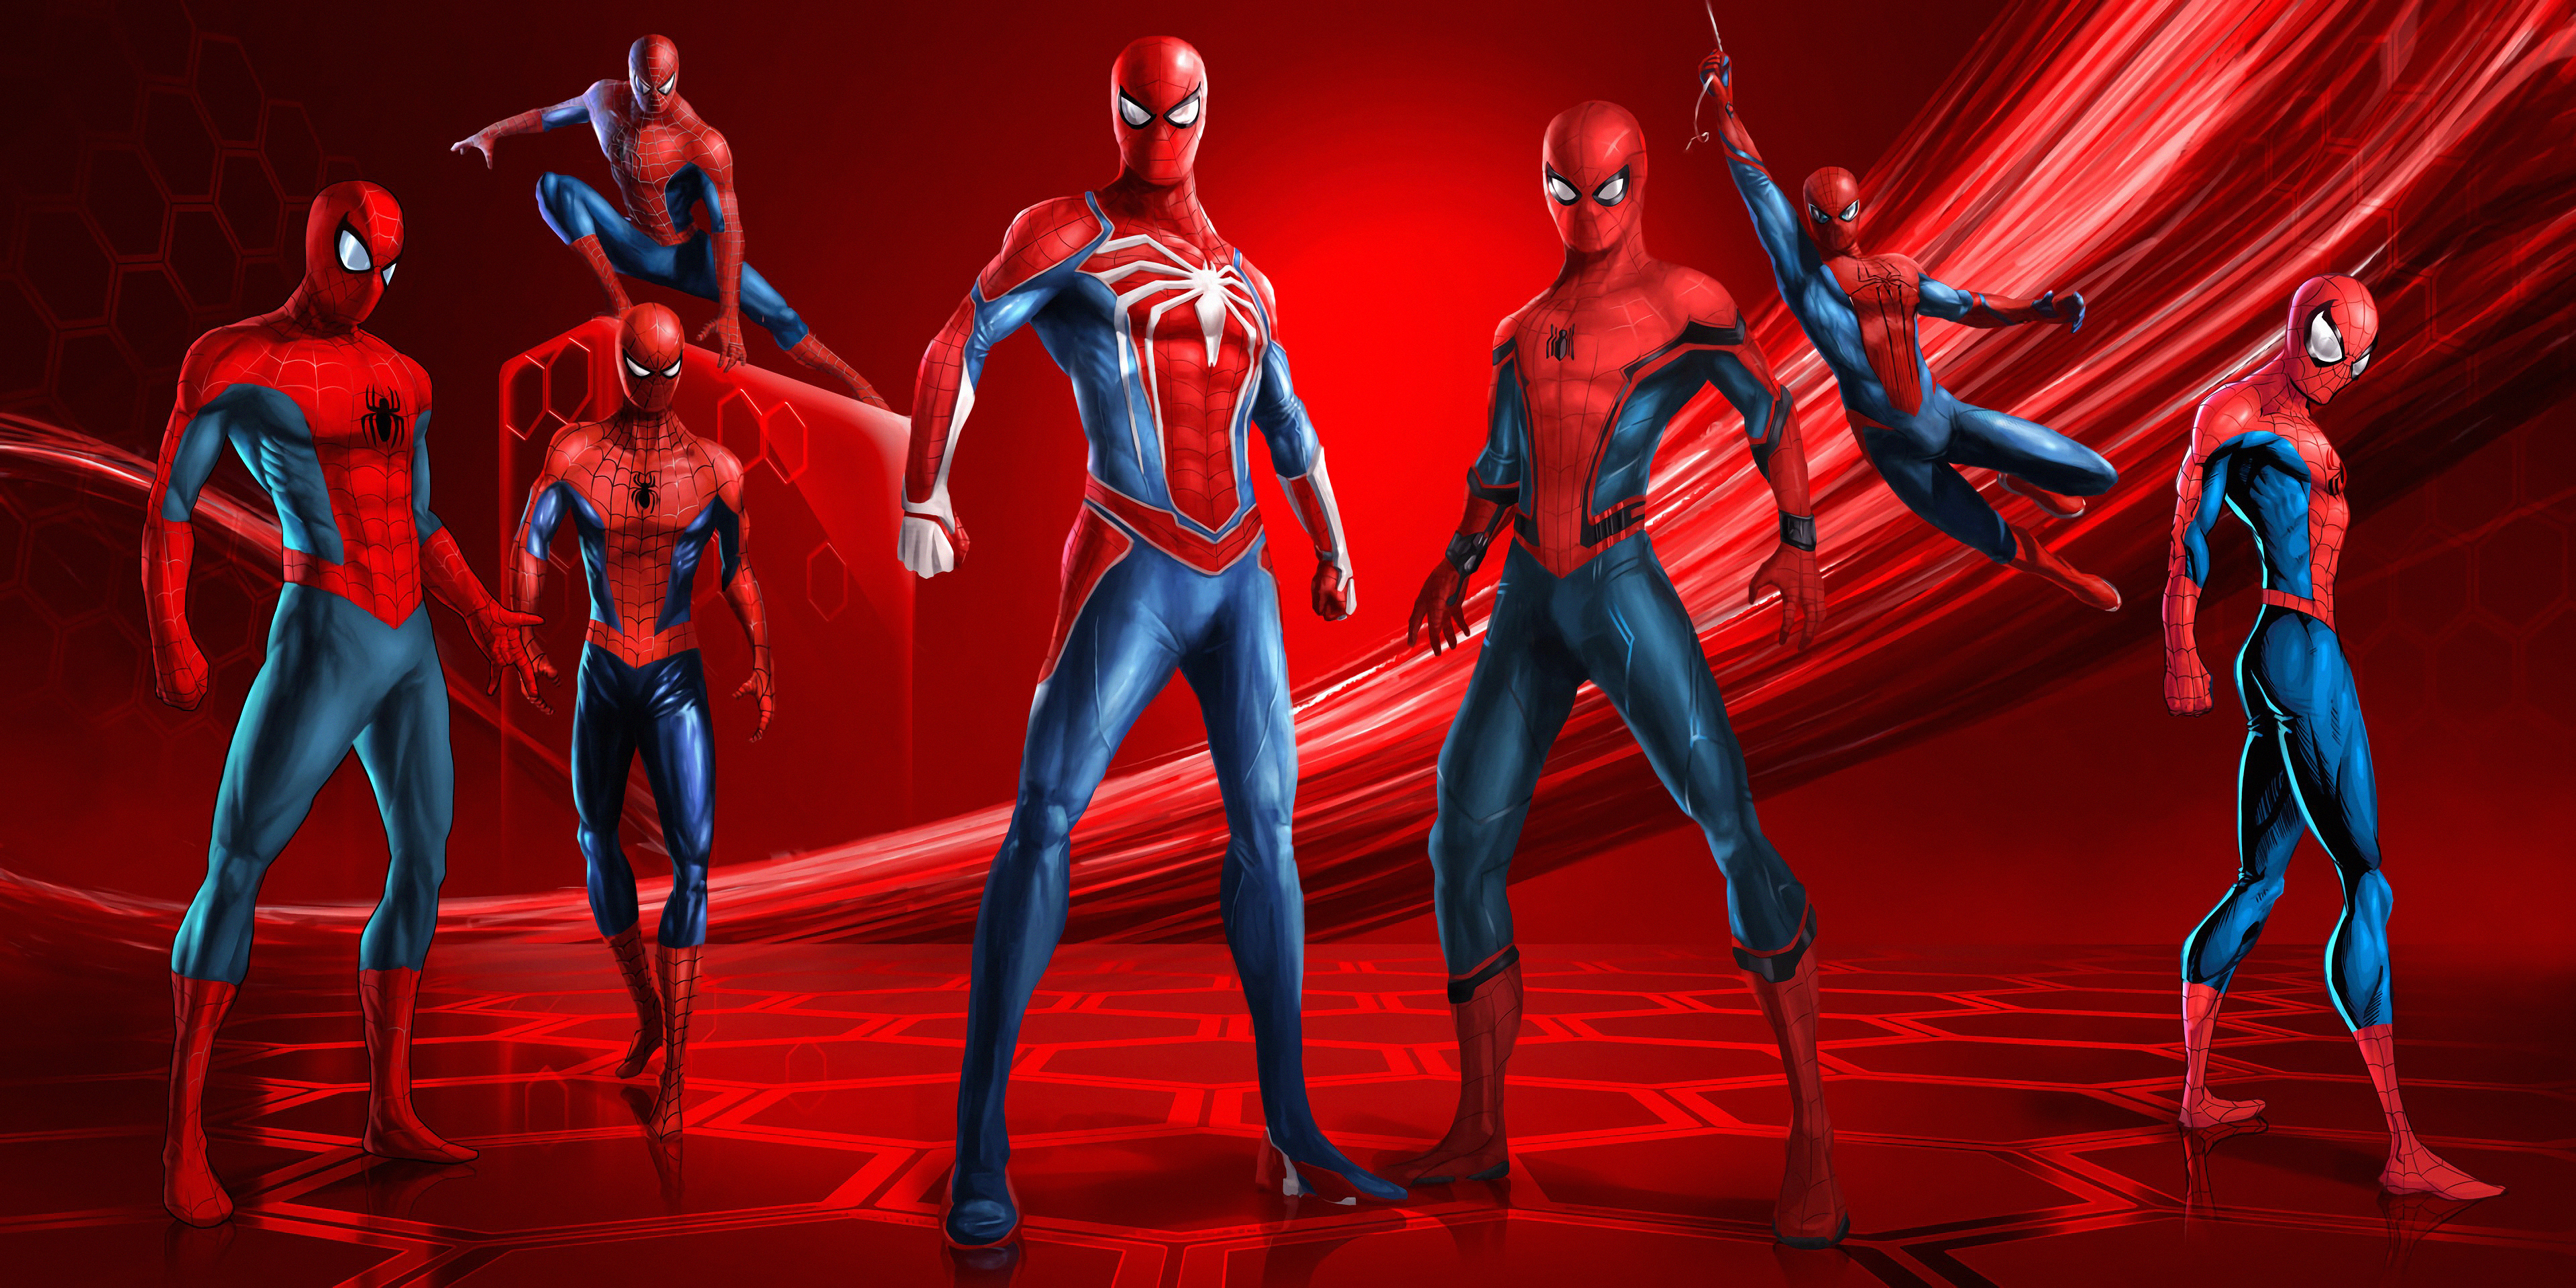 spiderman wallpaper hd,rosso,personaggio fittizio,supereroe,umano,scena